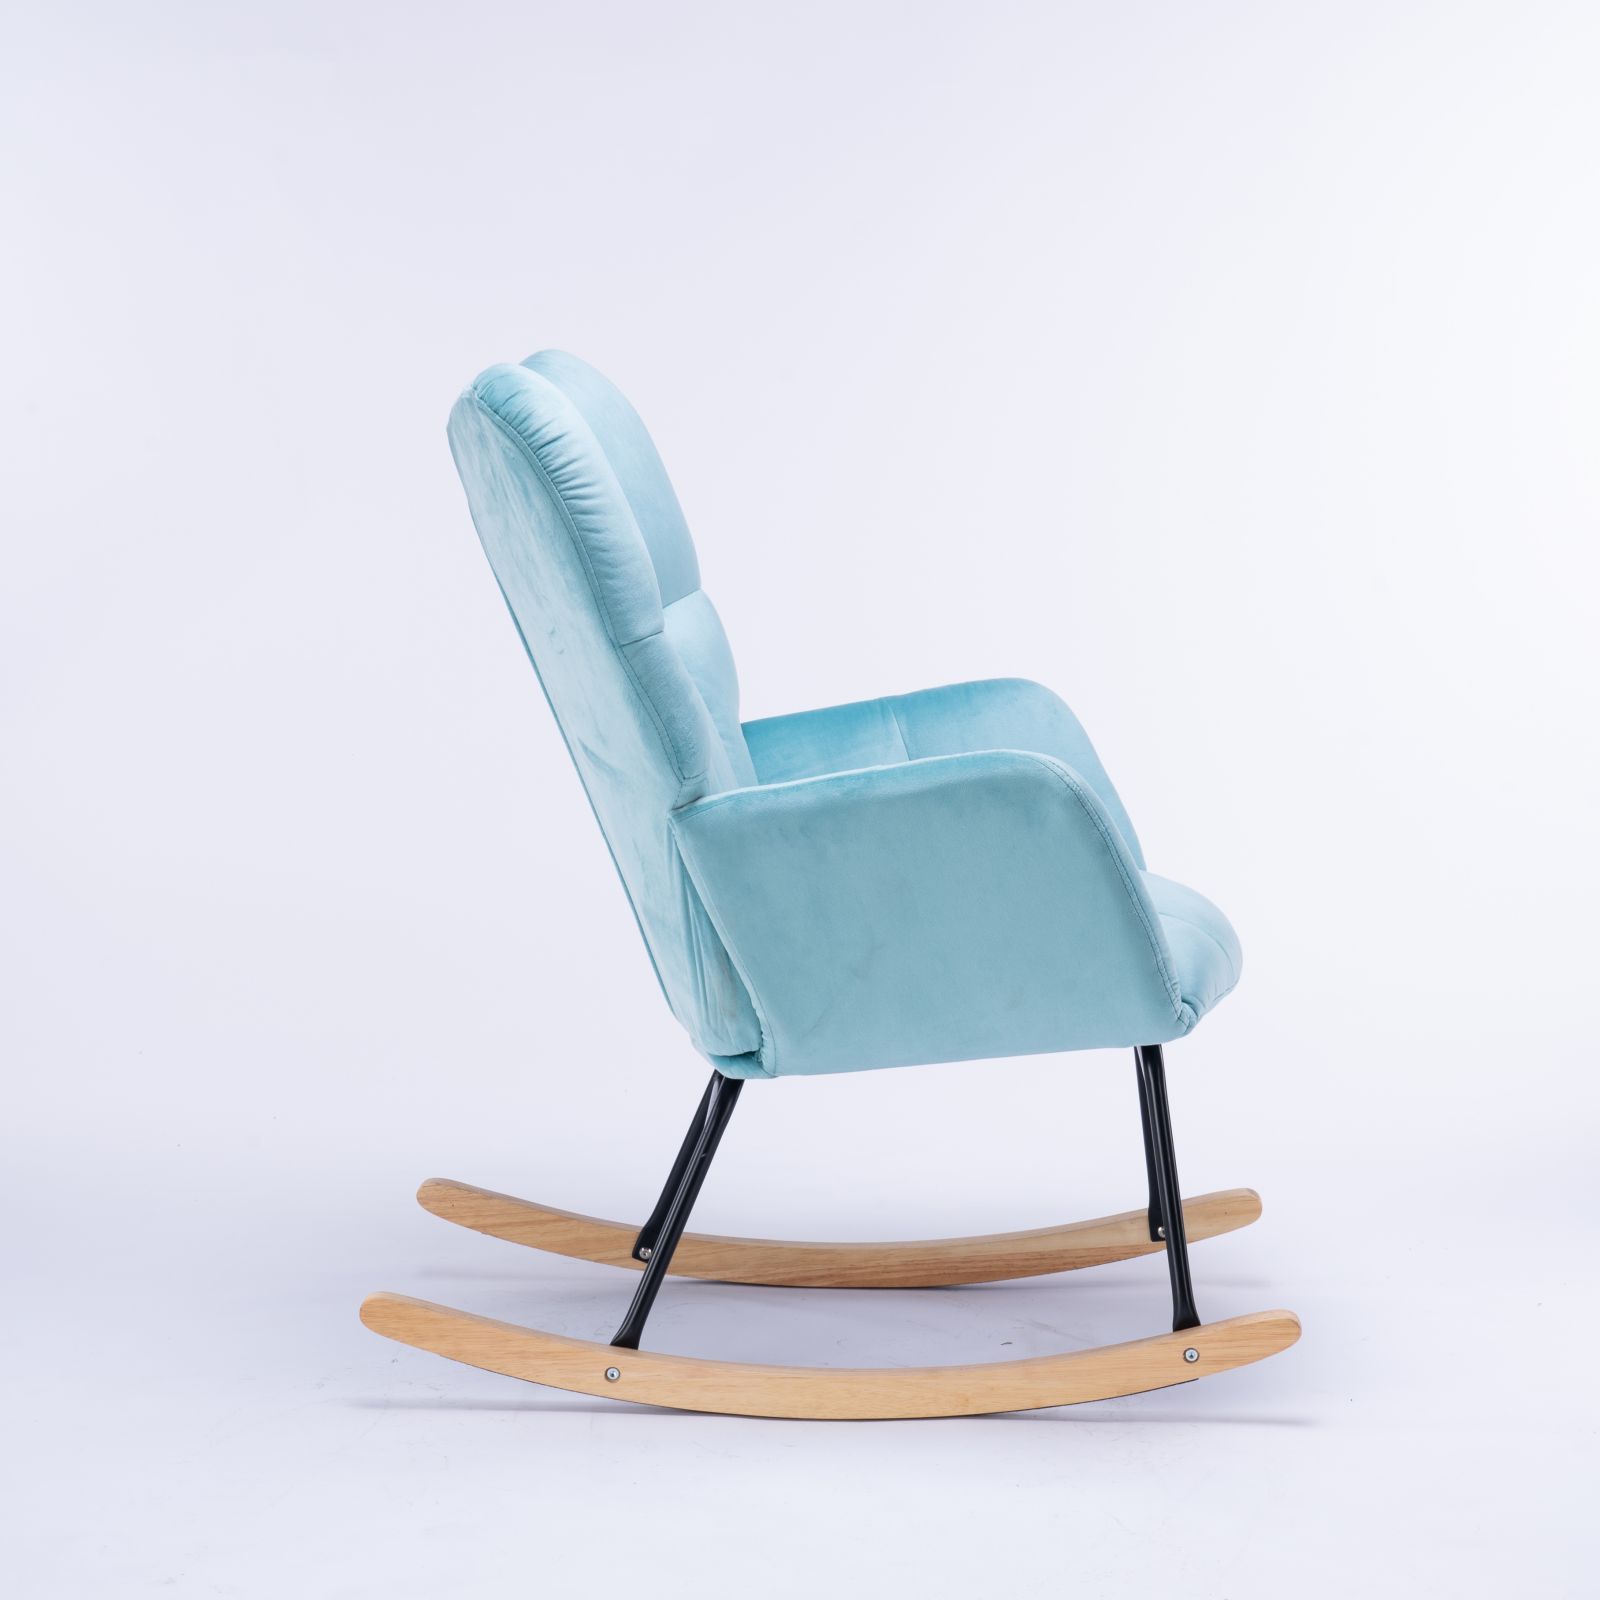 Mid Century Modern Velvet Tufted Upholstered Rocking Chair Padded Seat for Living Room Bedroom, Cyan Blue-Boyel Living